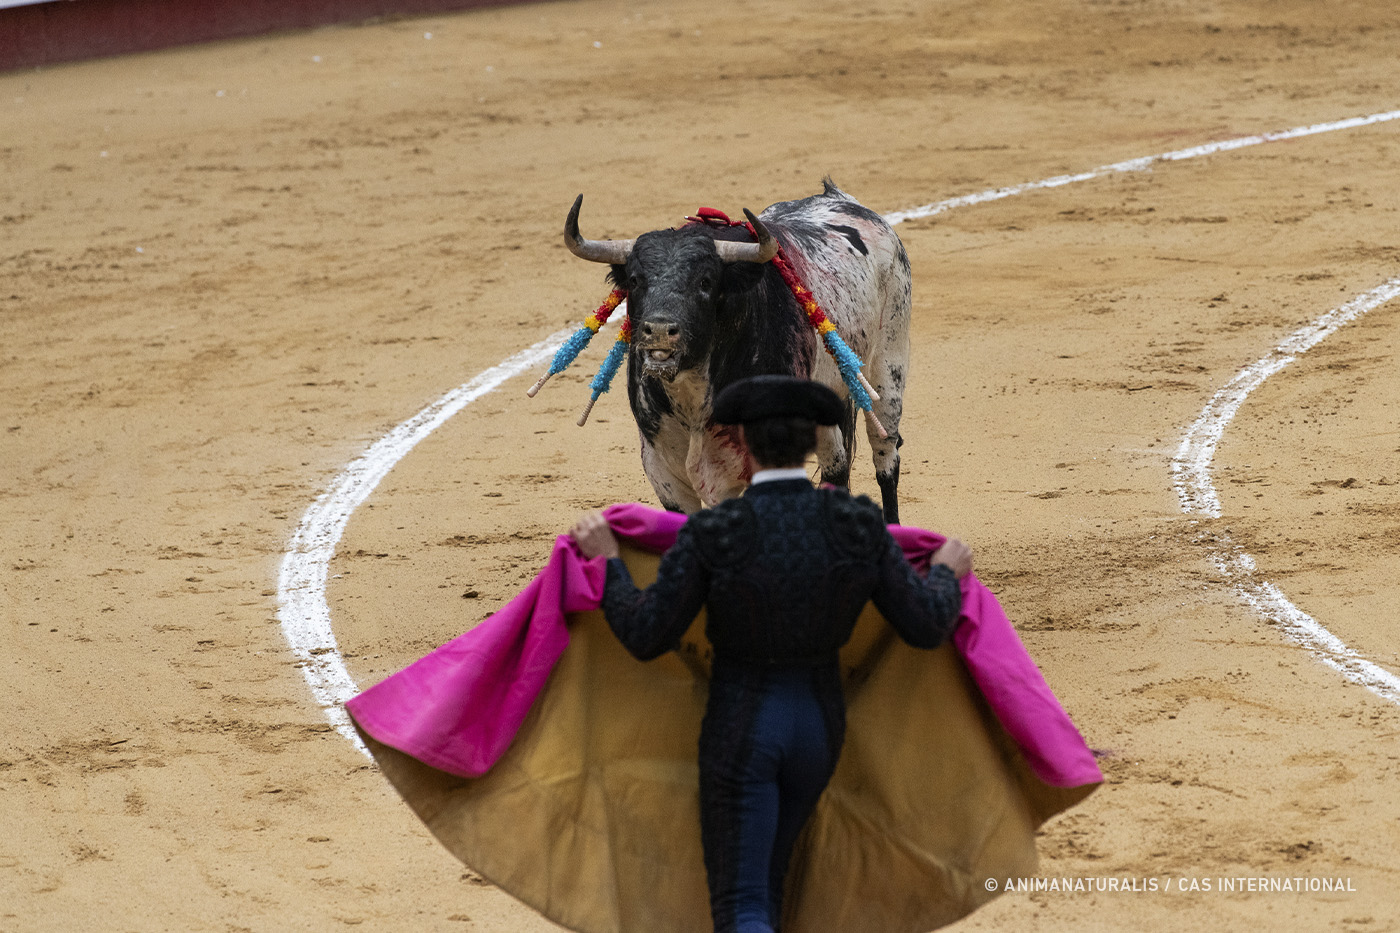 Bull and matador